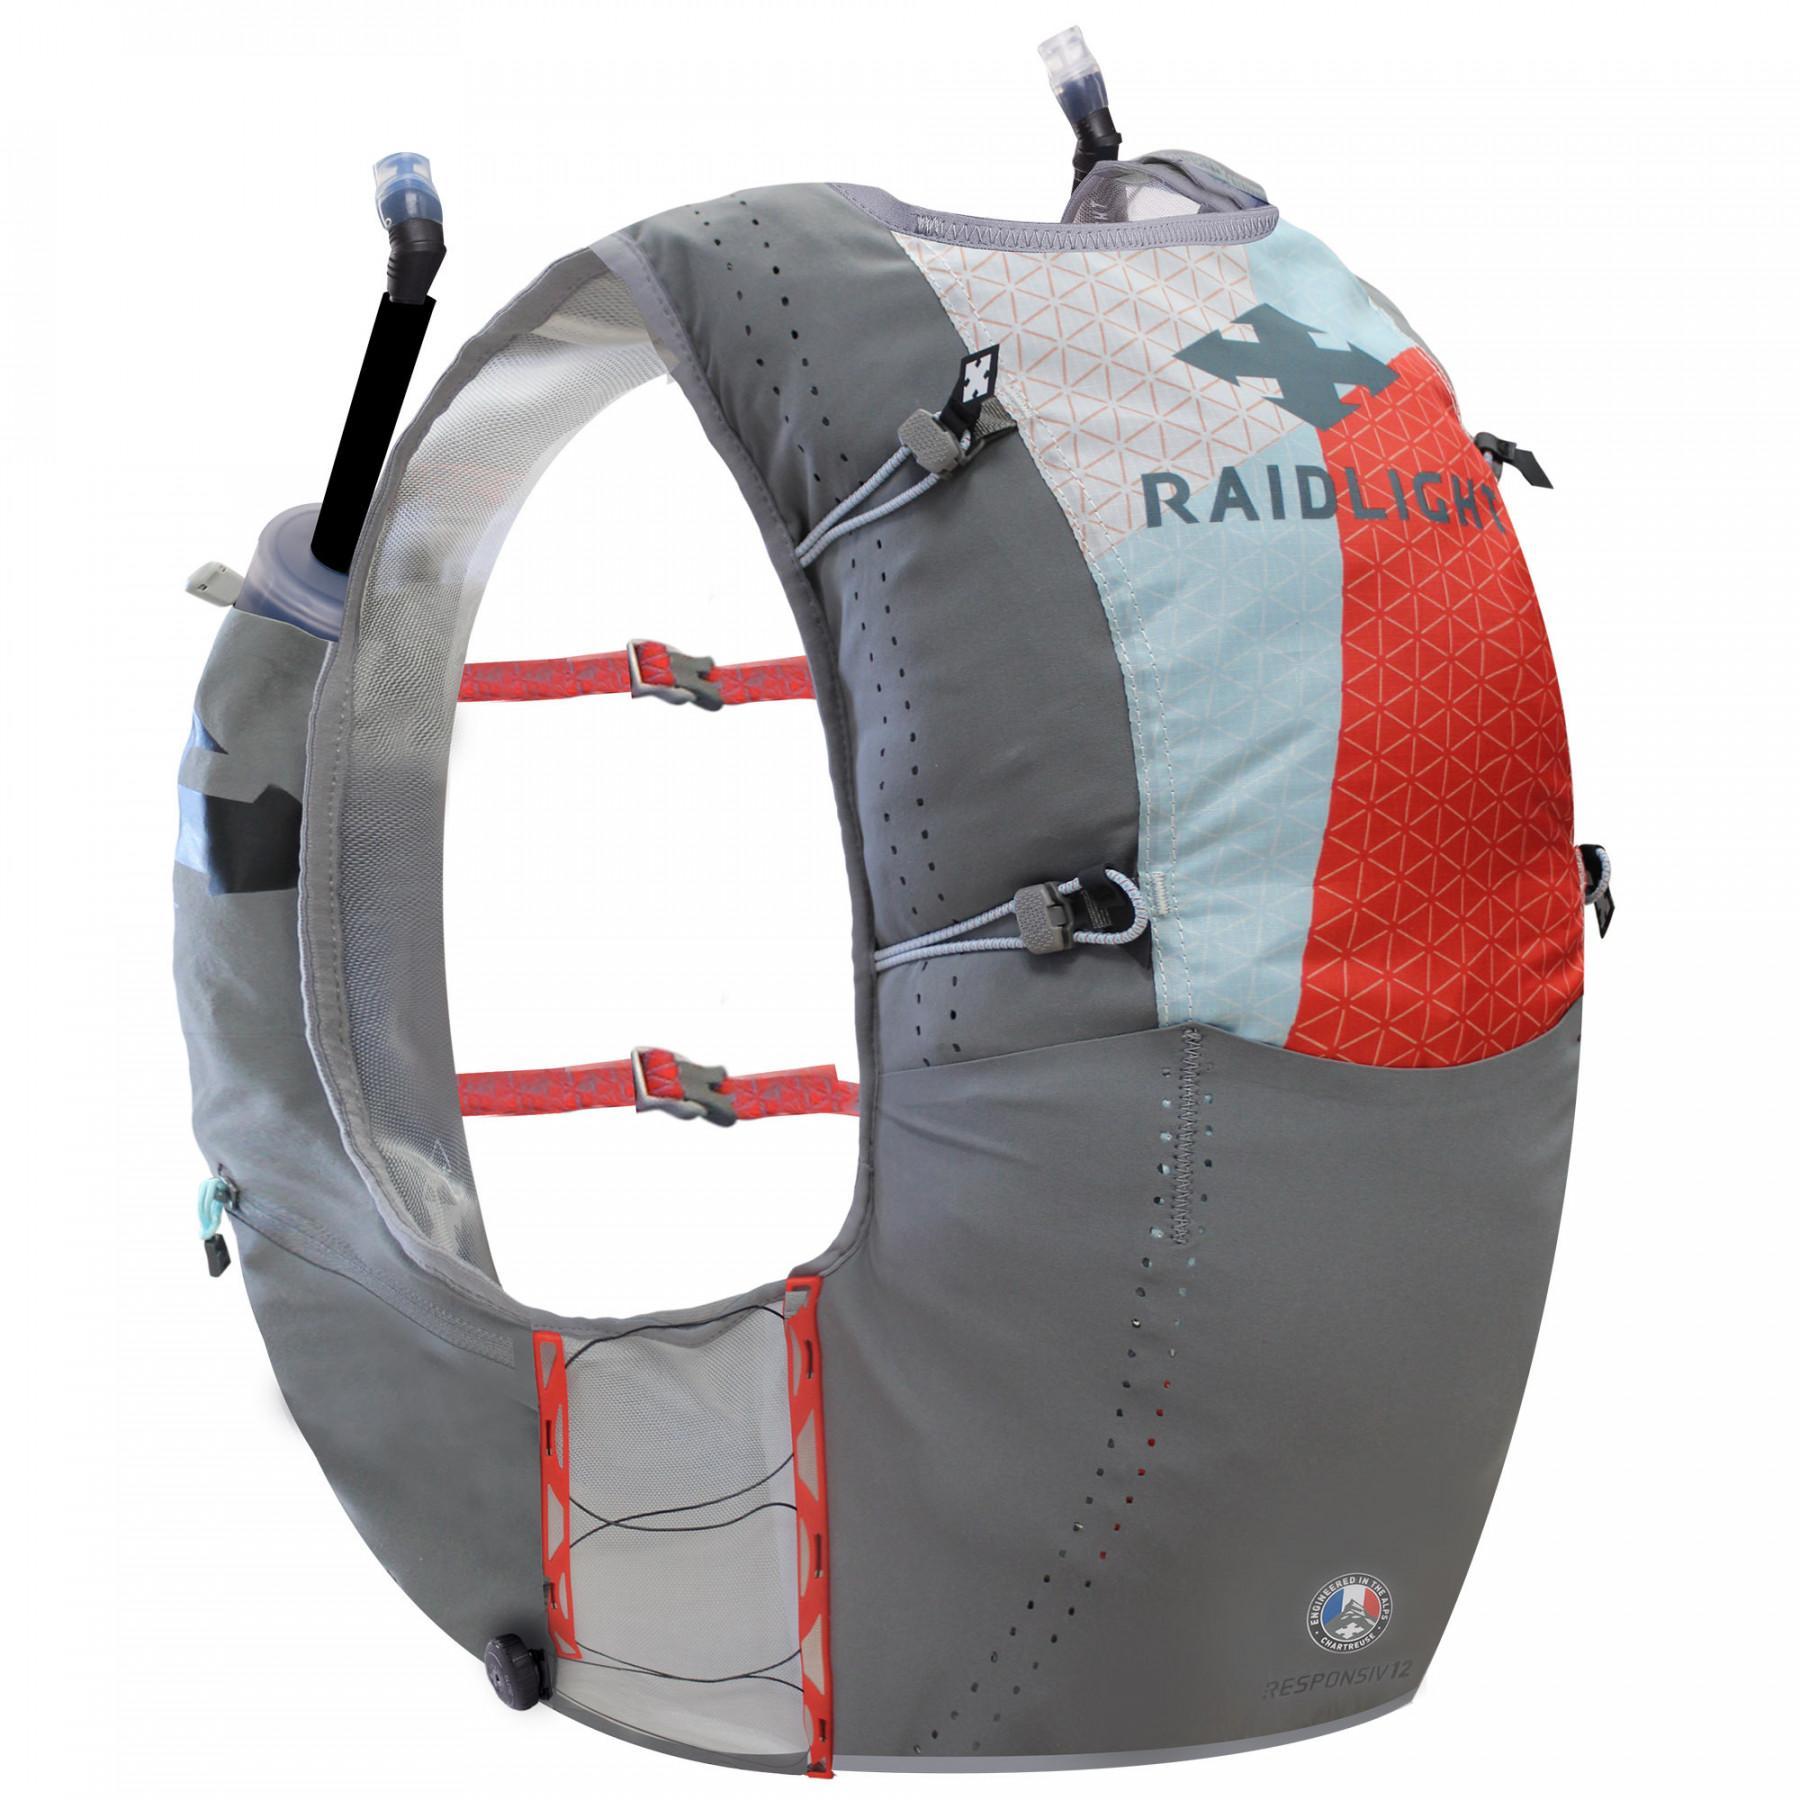 Backpack RaidLight responsiv vest 12l